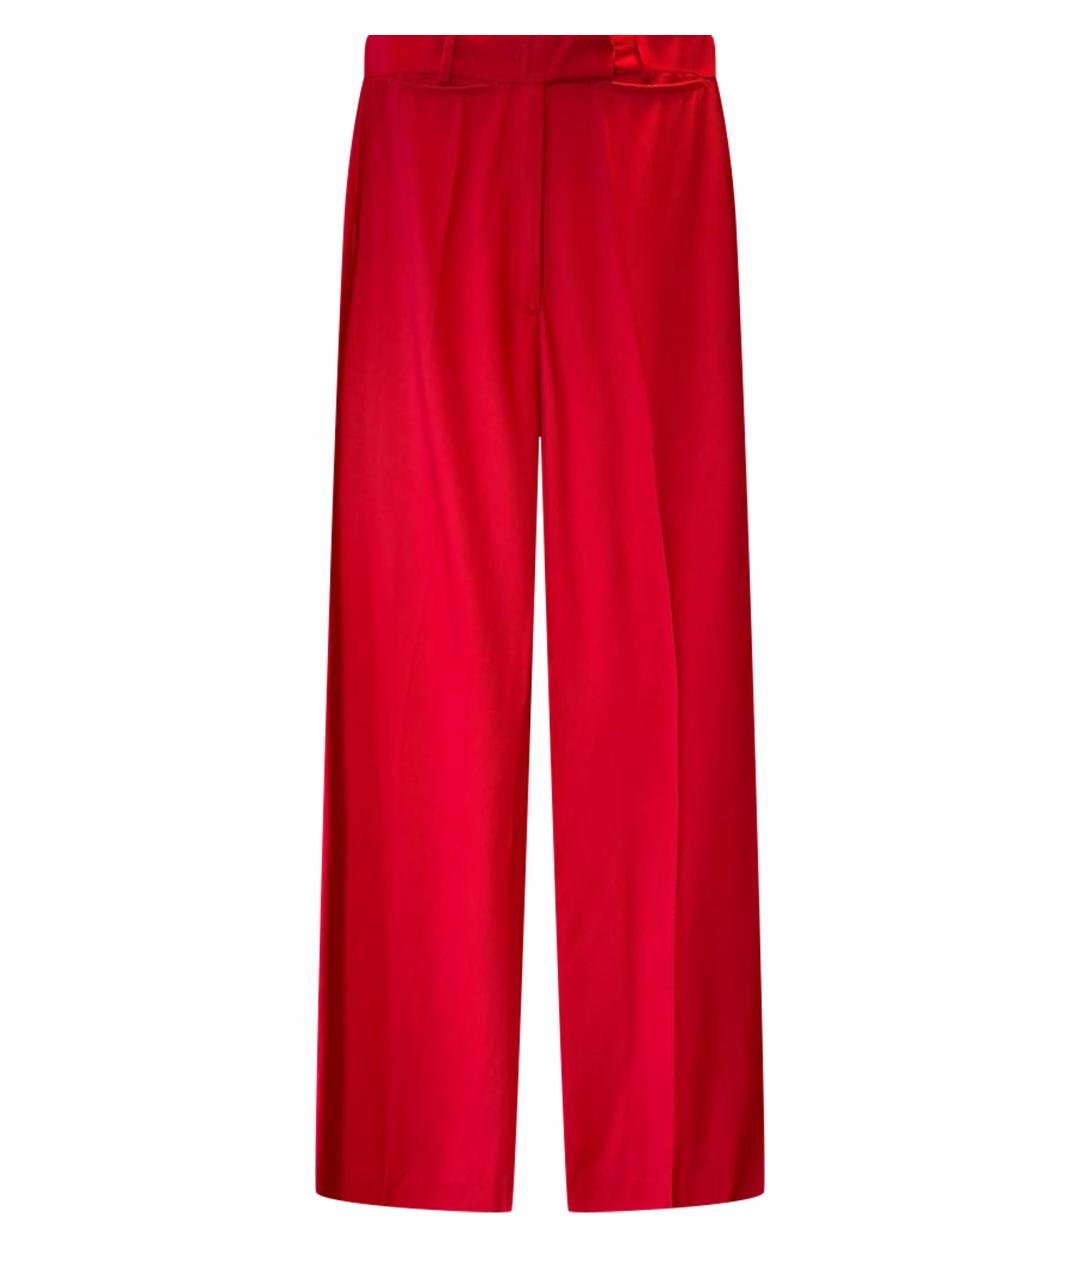 GOLDEN GOOSE DELUXE BRAND Красные вискозные прямые брюки, фото 1